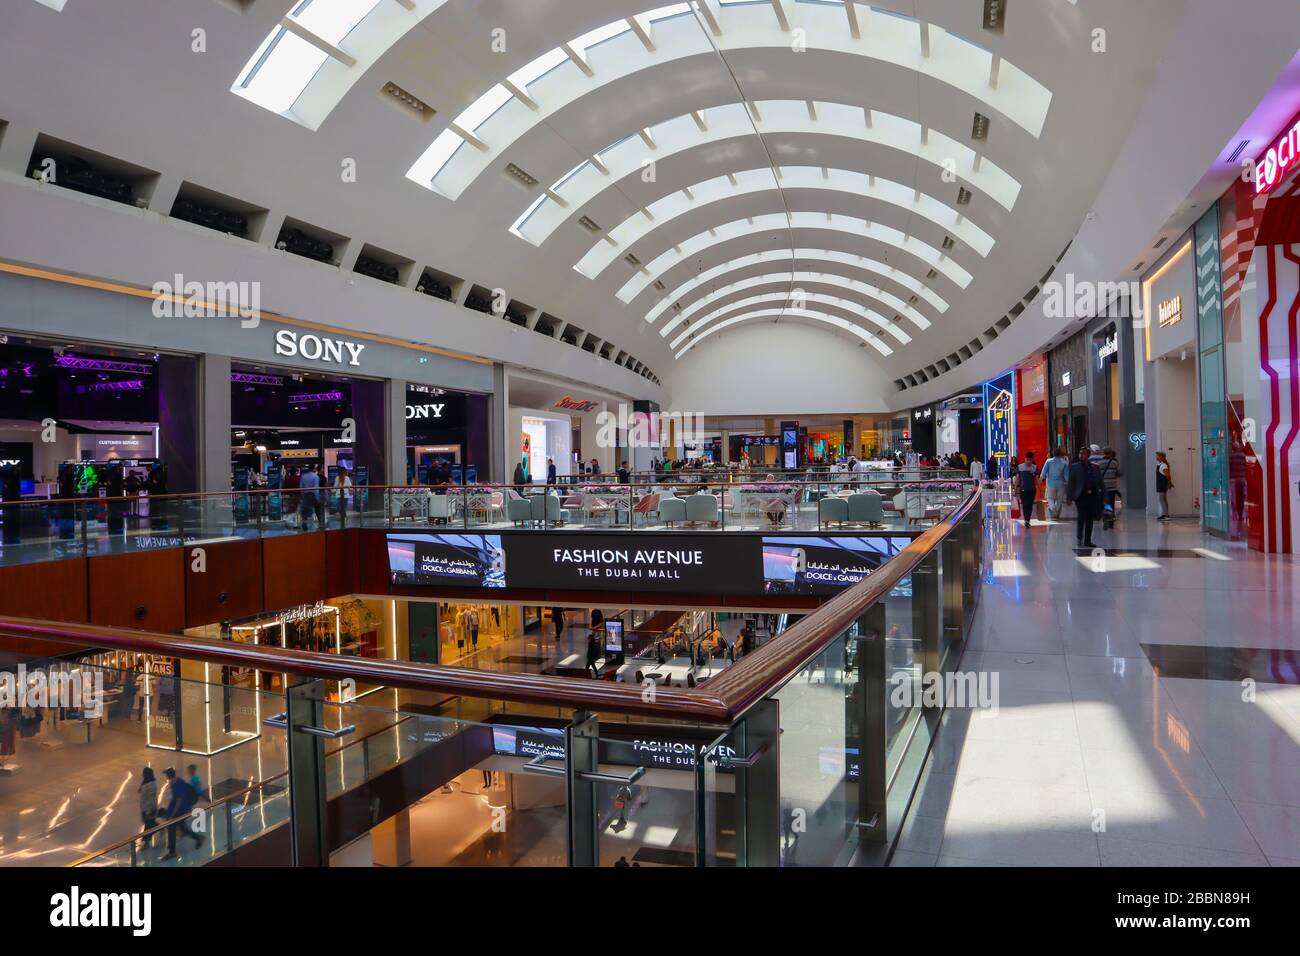 The Dubai Mall shopping center. Stock Photo